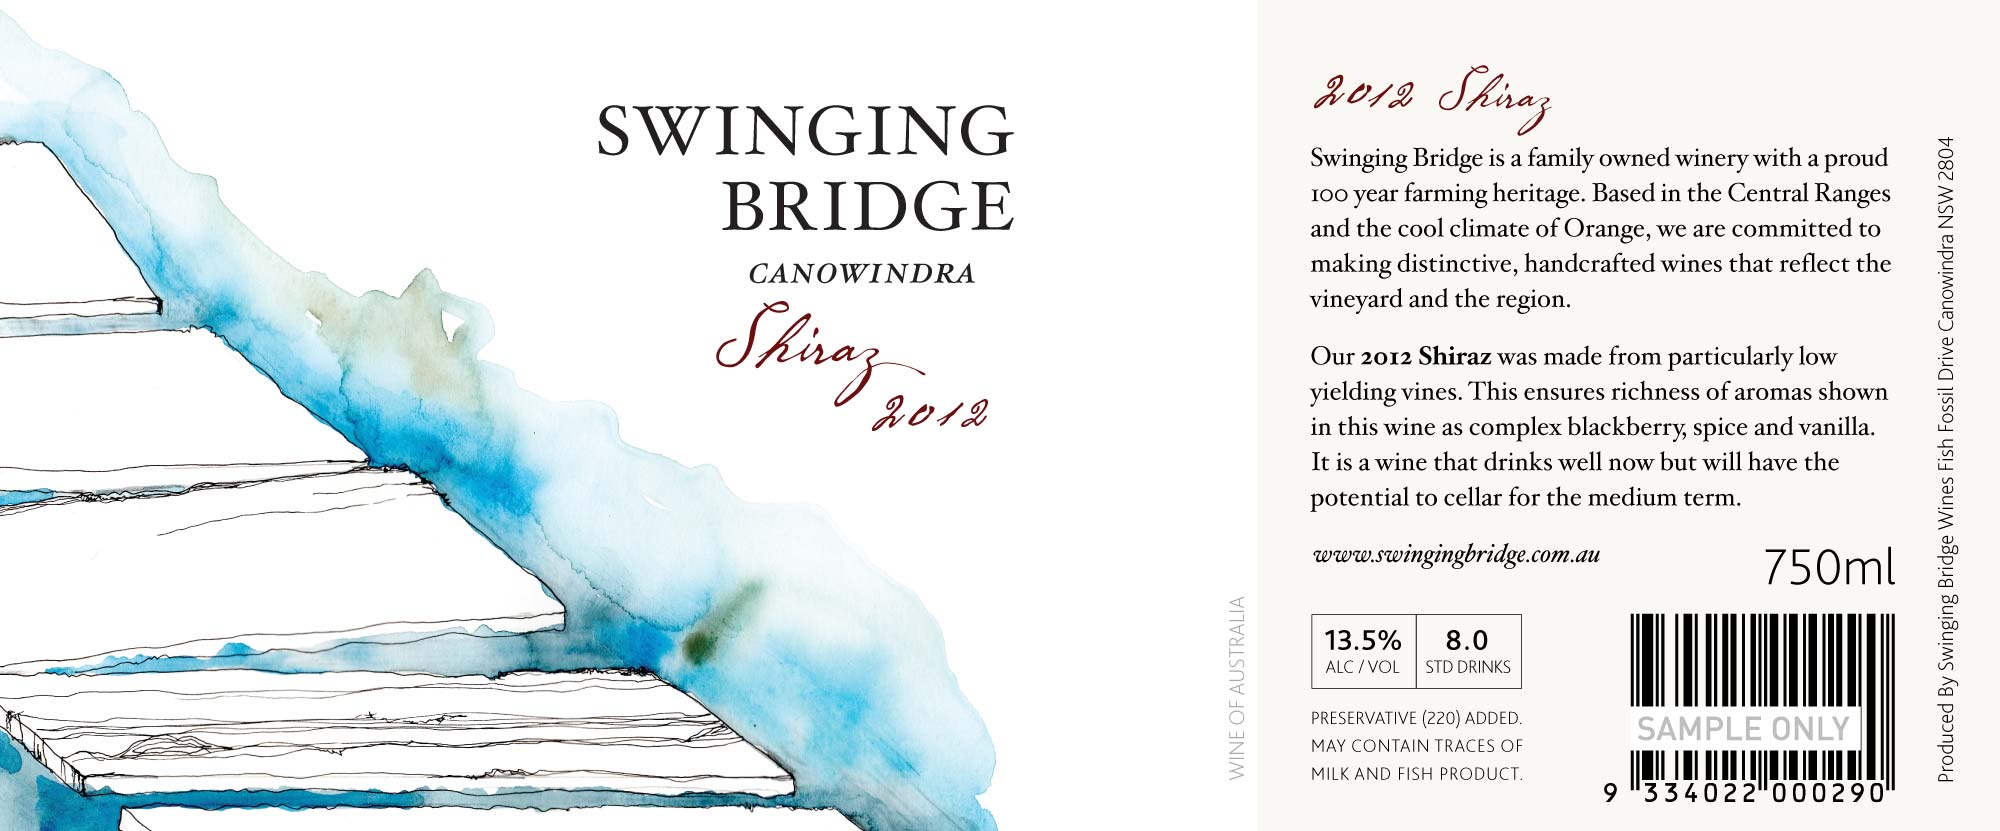 Swinging Bridge Estate Range Wine Label Design